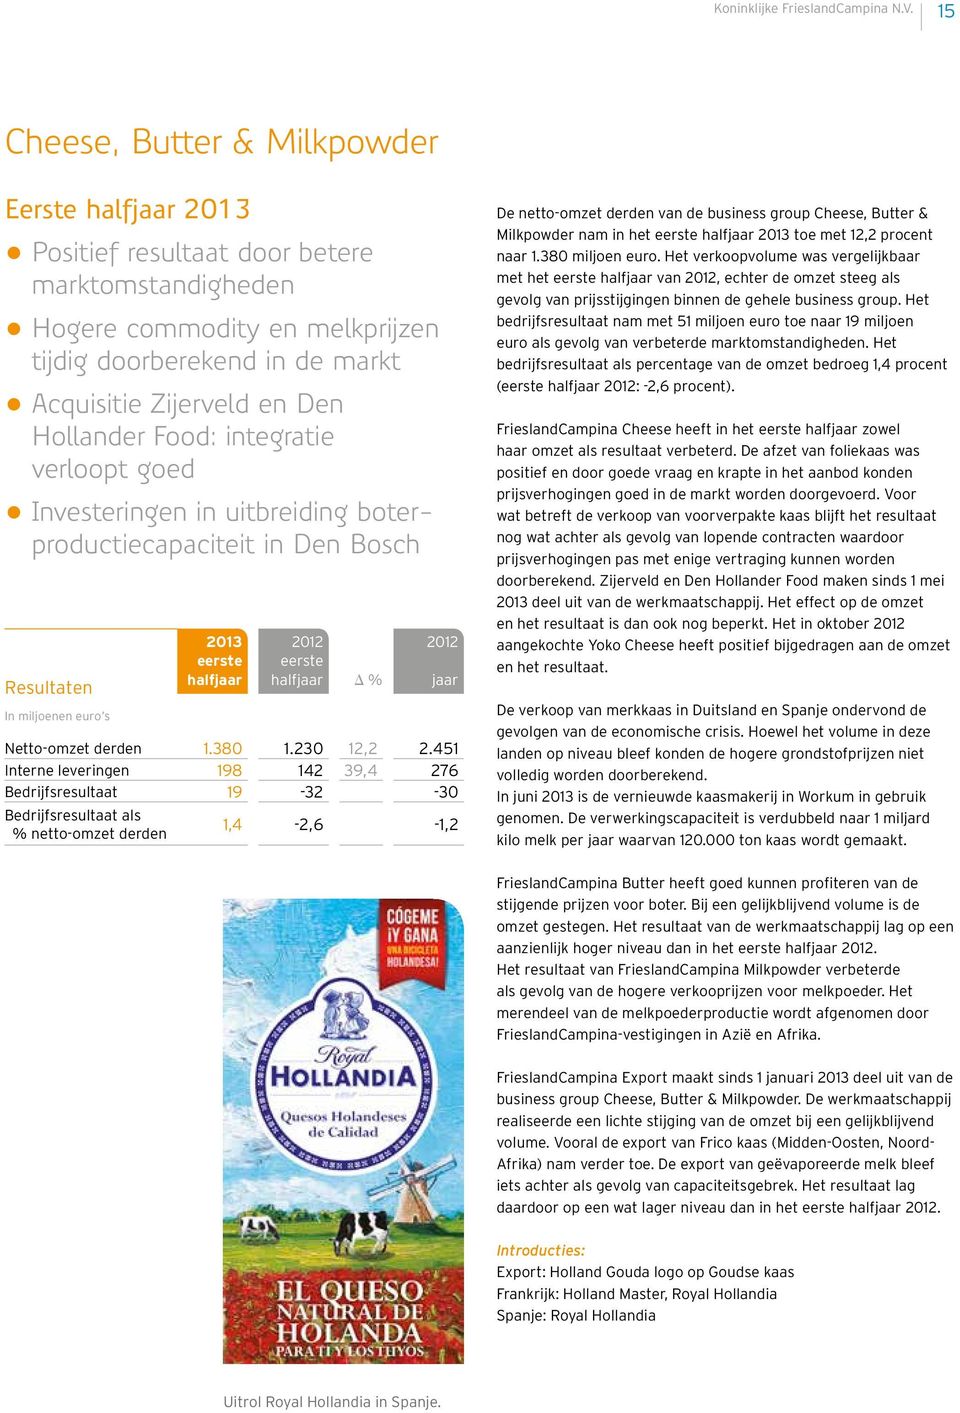 Food: integratie verloopt goed Investeringen in uitbreiding boterproductie capaciteit in Den Bosch Resultaten In miljoenen euro s eerste halfjaar eerste halfjaar Δ % jaar Netto-omzet derden 1.380 1.